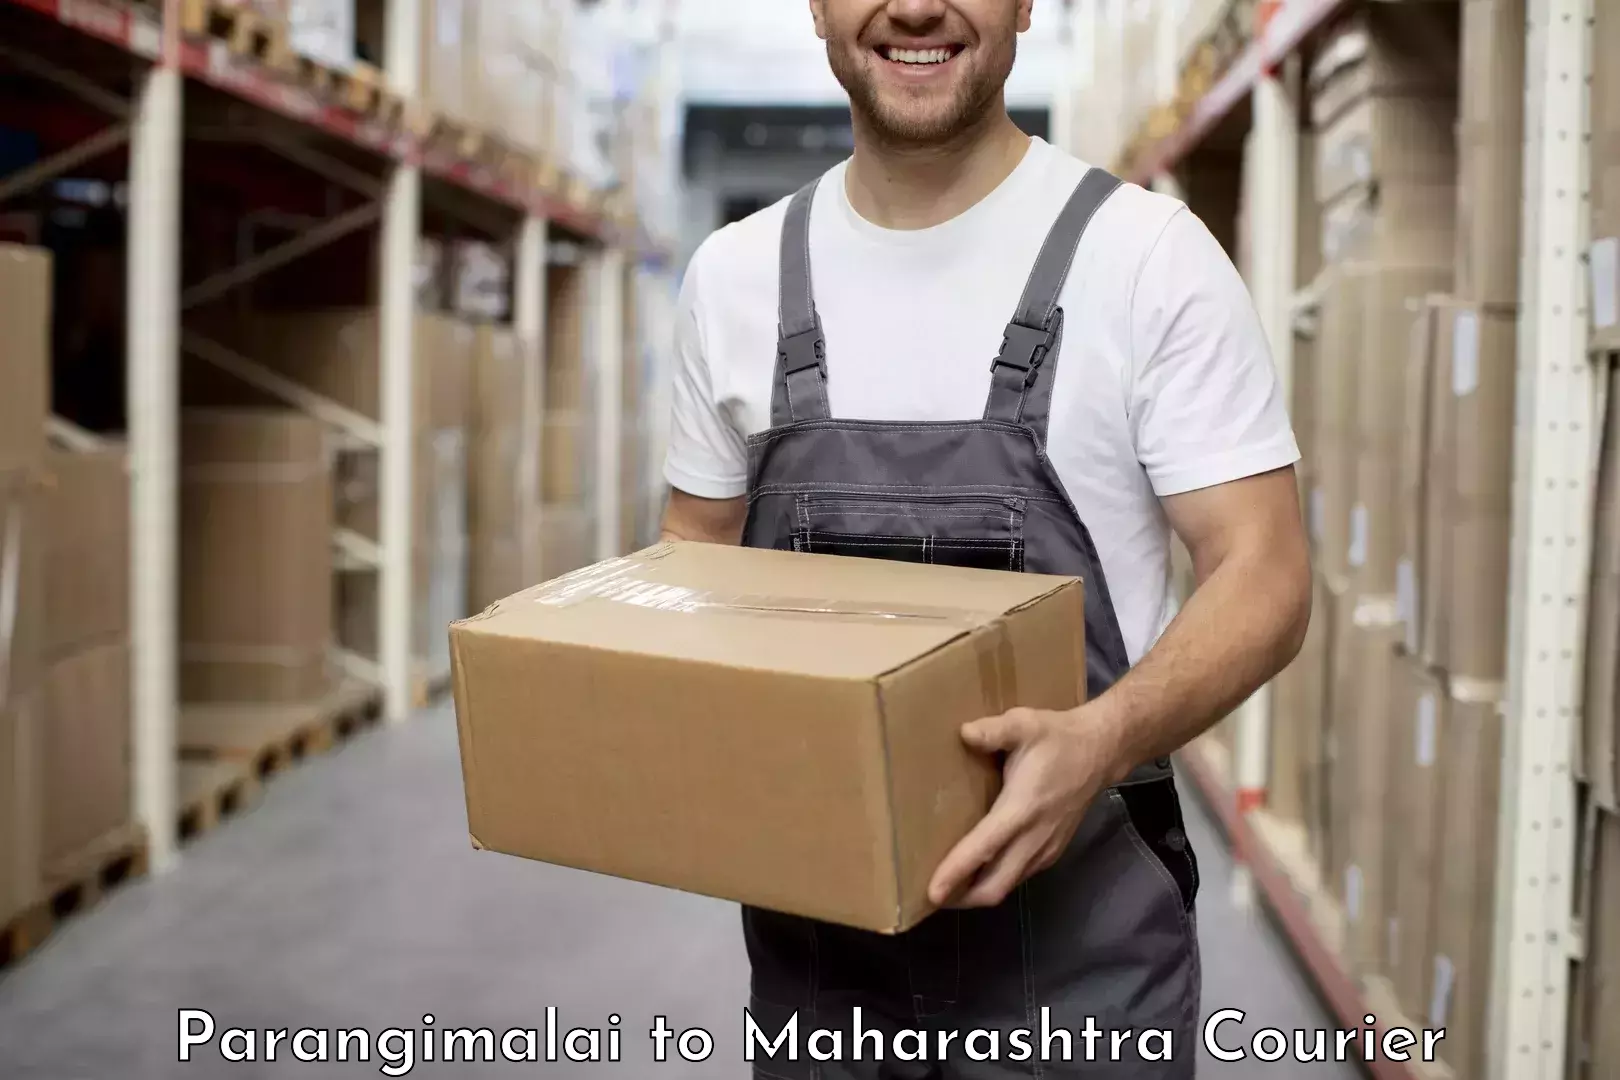 Express courier capabilities Parangimalai to Mumbai Port